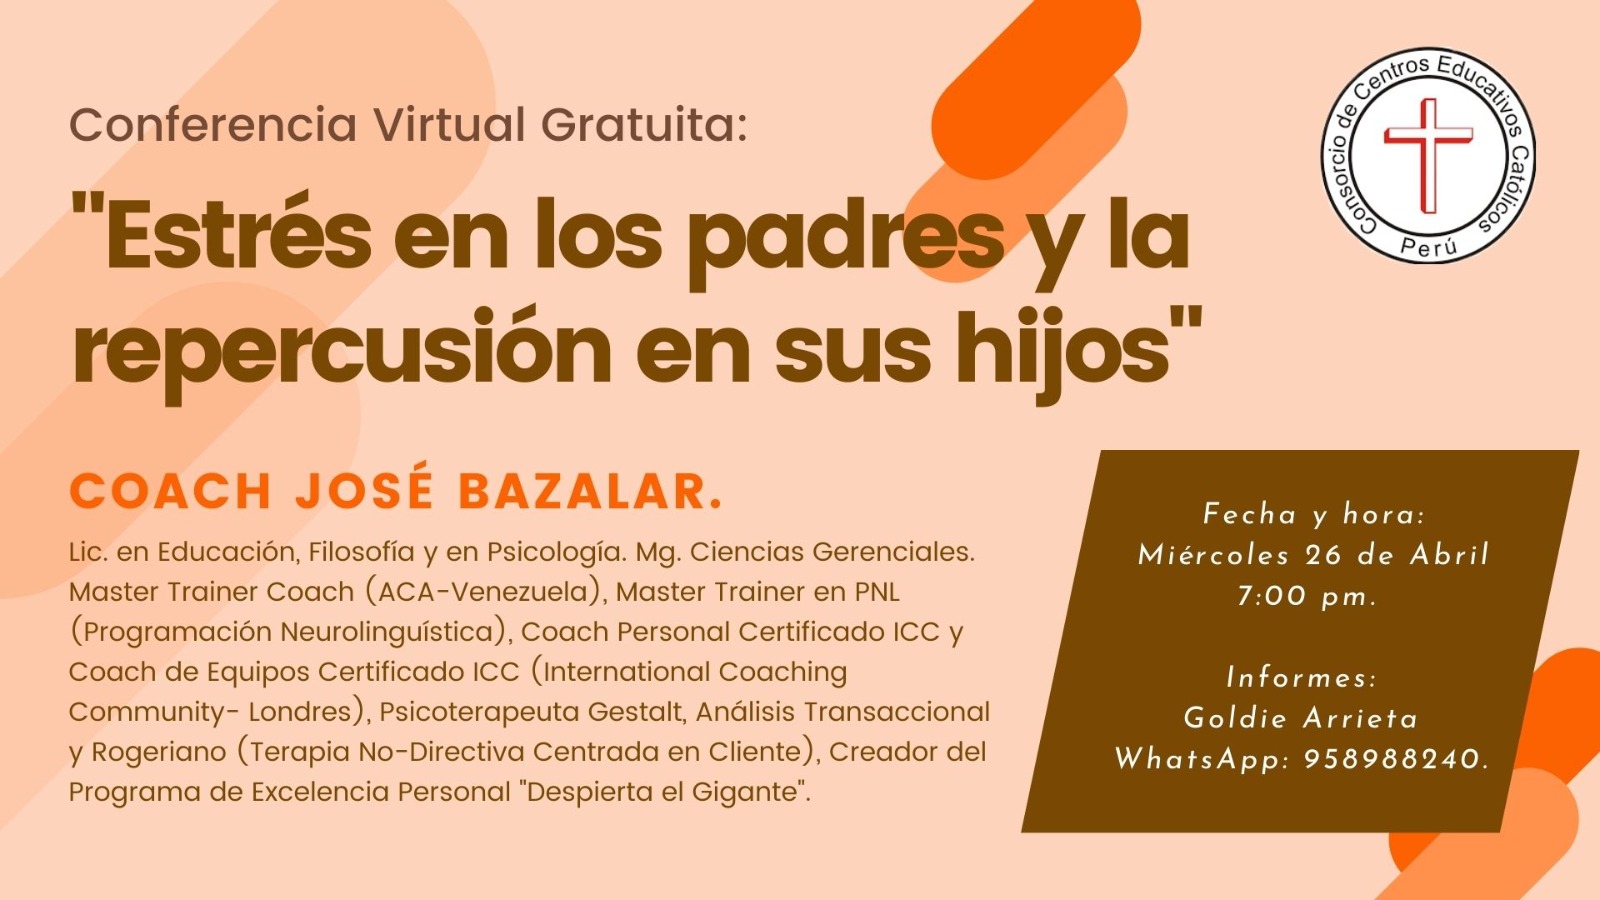 Conferencia Virtual Gratuita 26.4.23 : "ESTRÉS EN LOS PADRES Y LA REPERCUSIÓN EN SUS HIJOS"